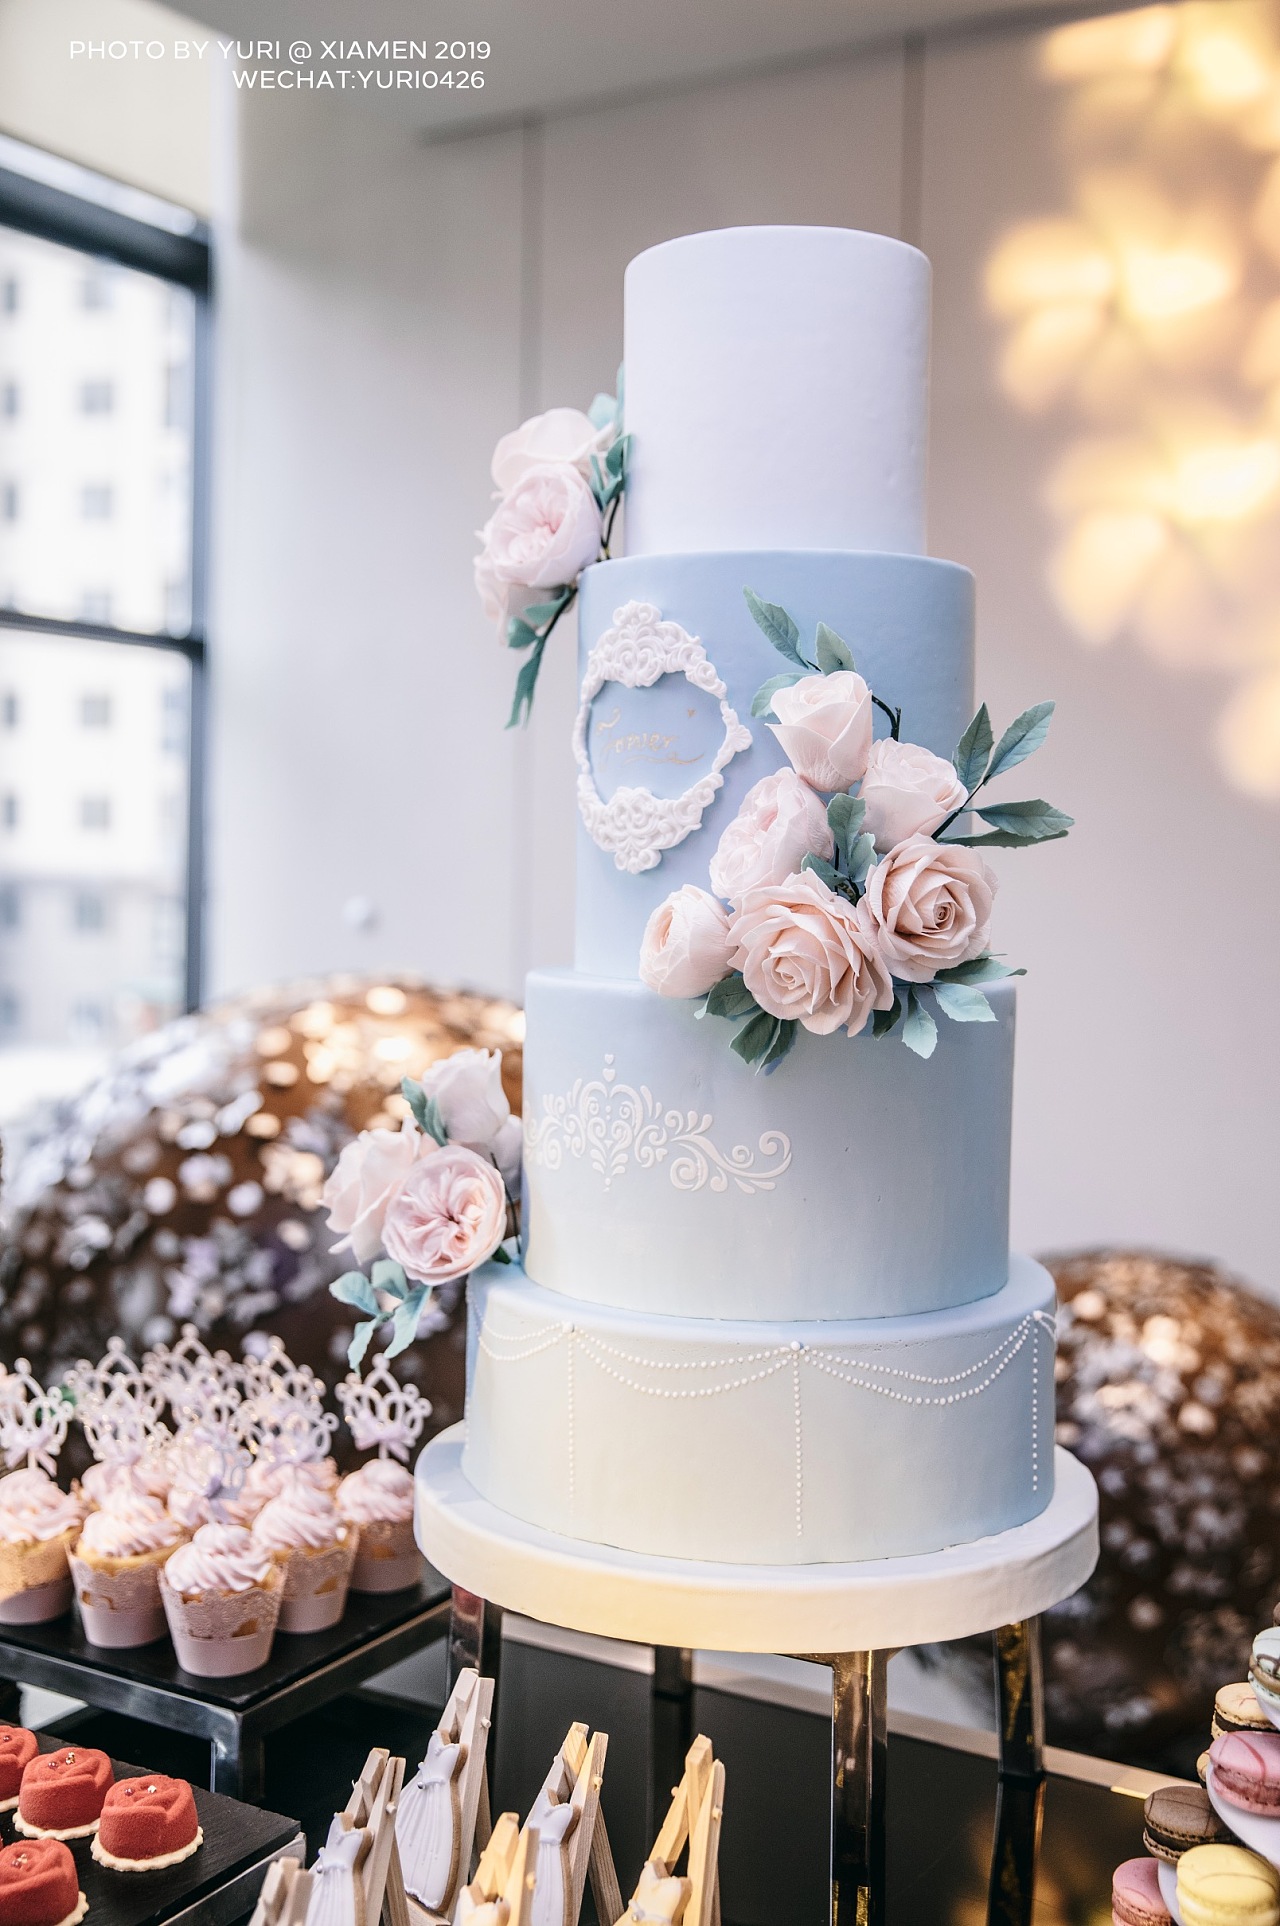 婚礼蛋糕定制服务 – 夏威夷MoMo婚礼策划